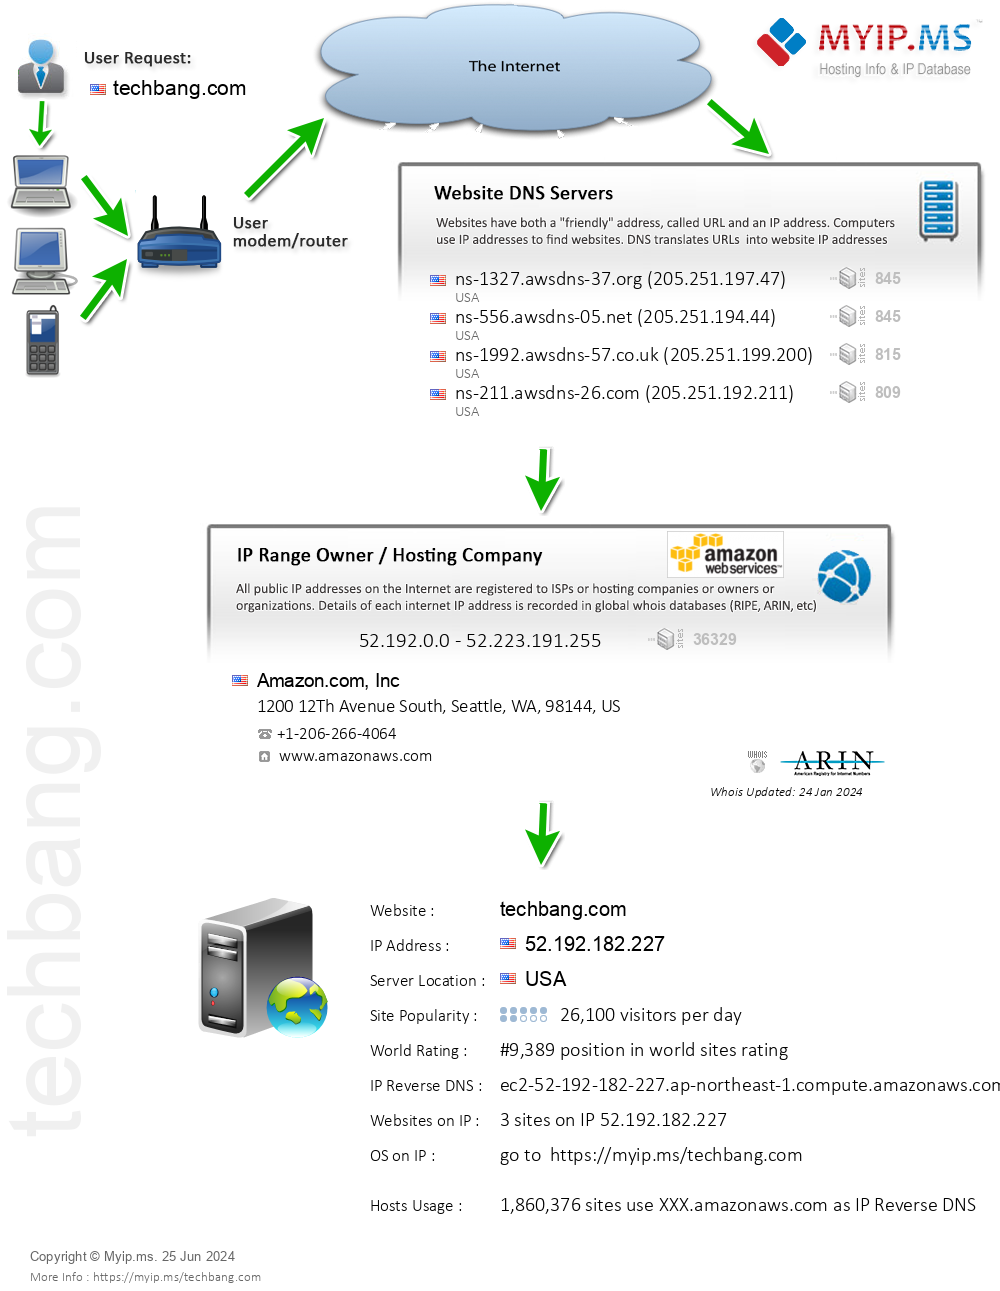 Techbang.com - Website Hosting Visual IP Diagram